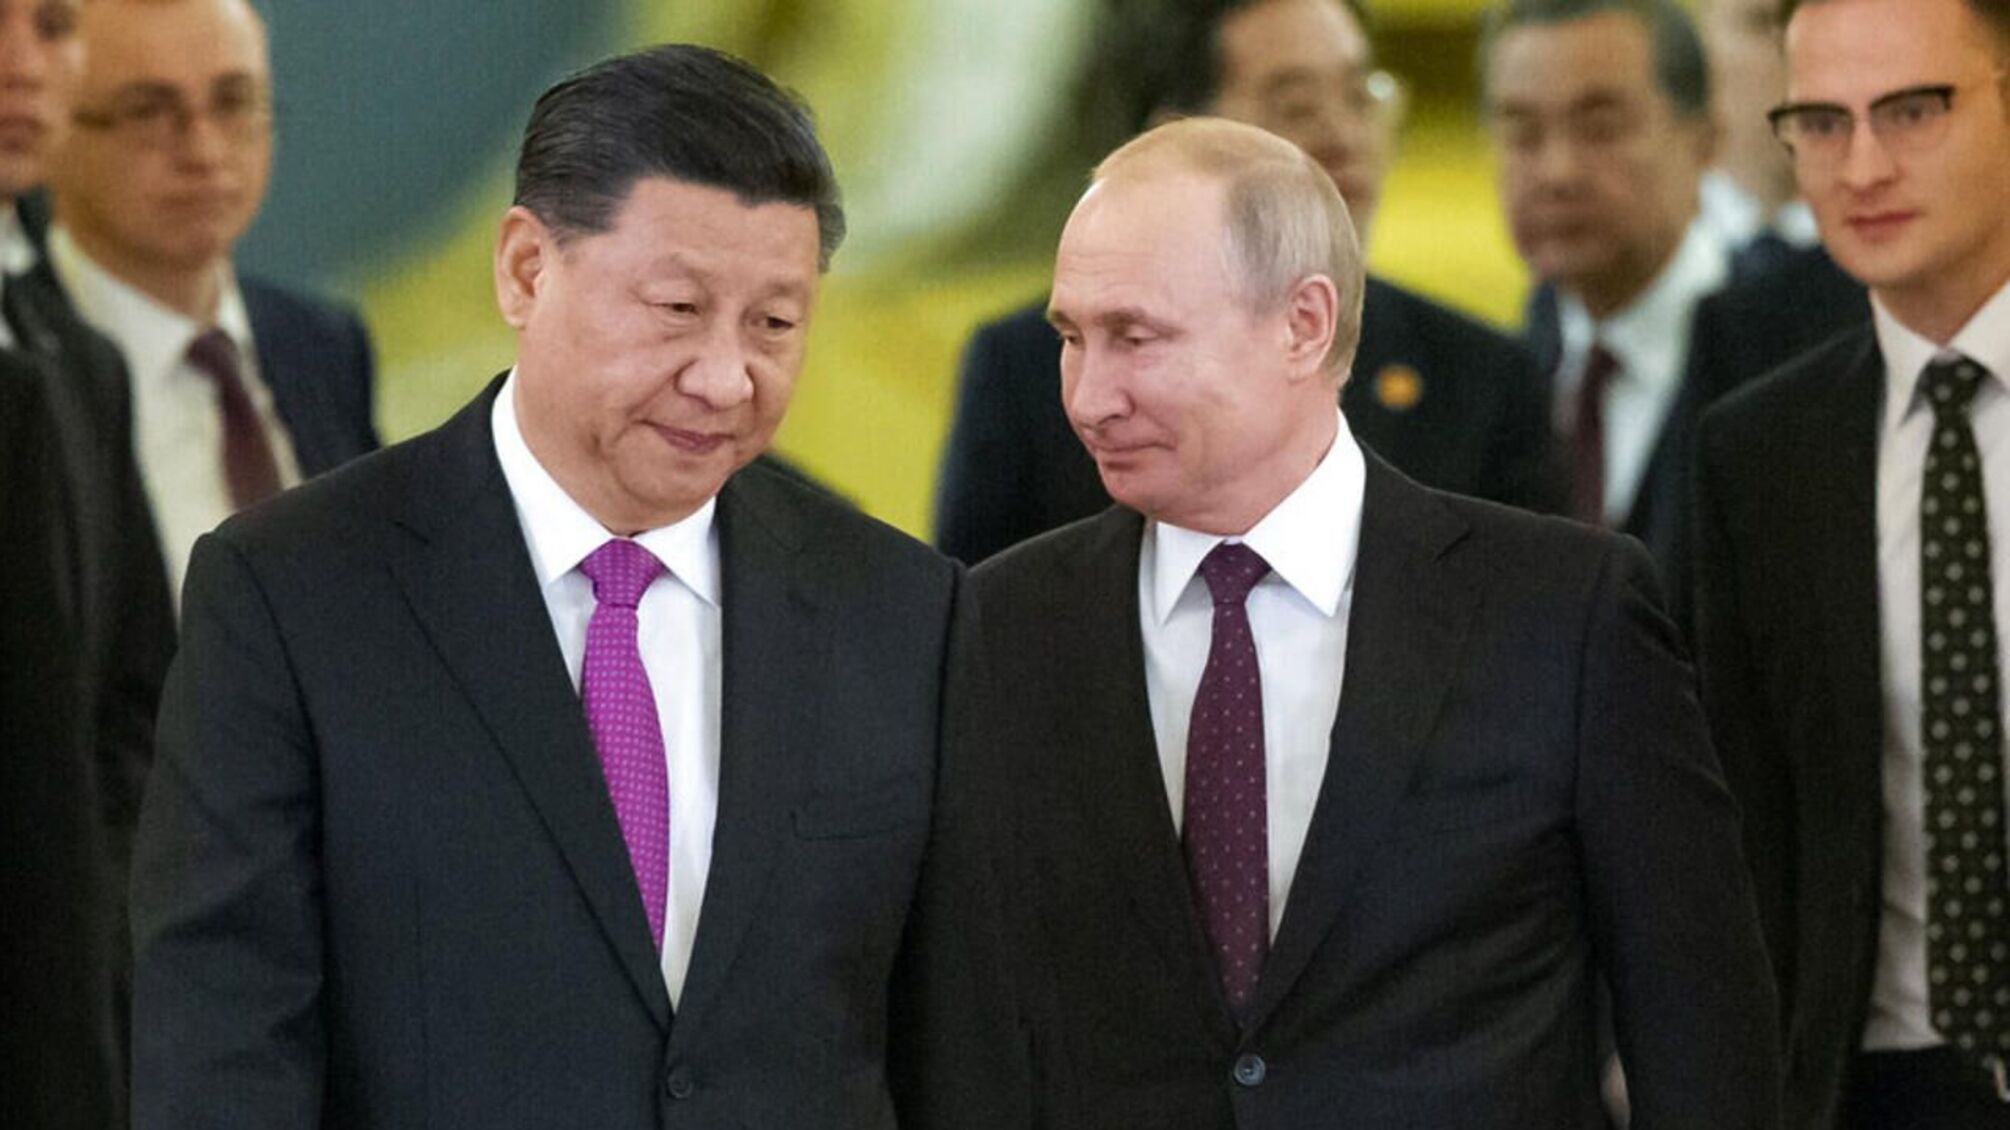 Голова КНР відмовив путіну на запрошення відвідати росію - японська газета Yomiuri